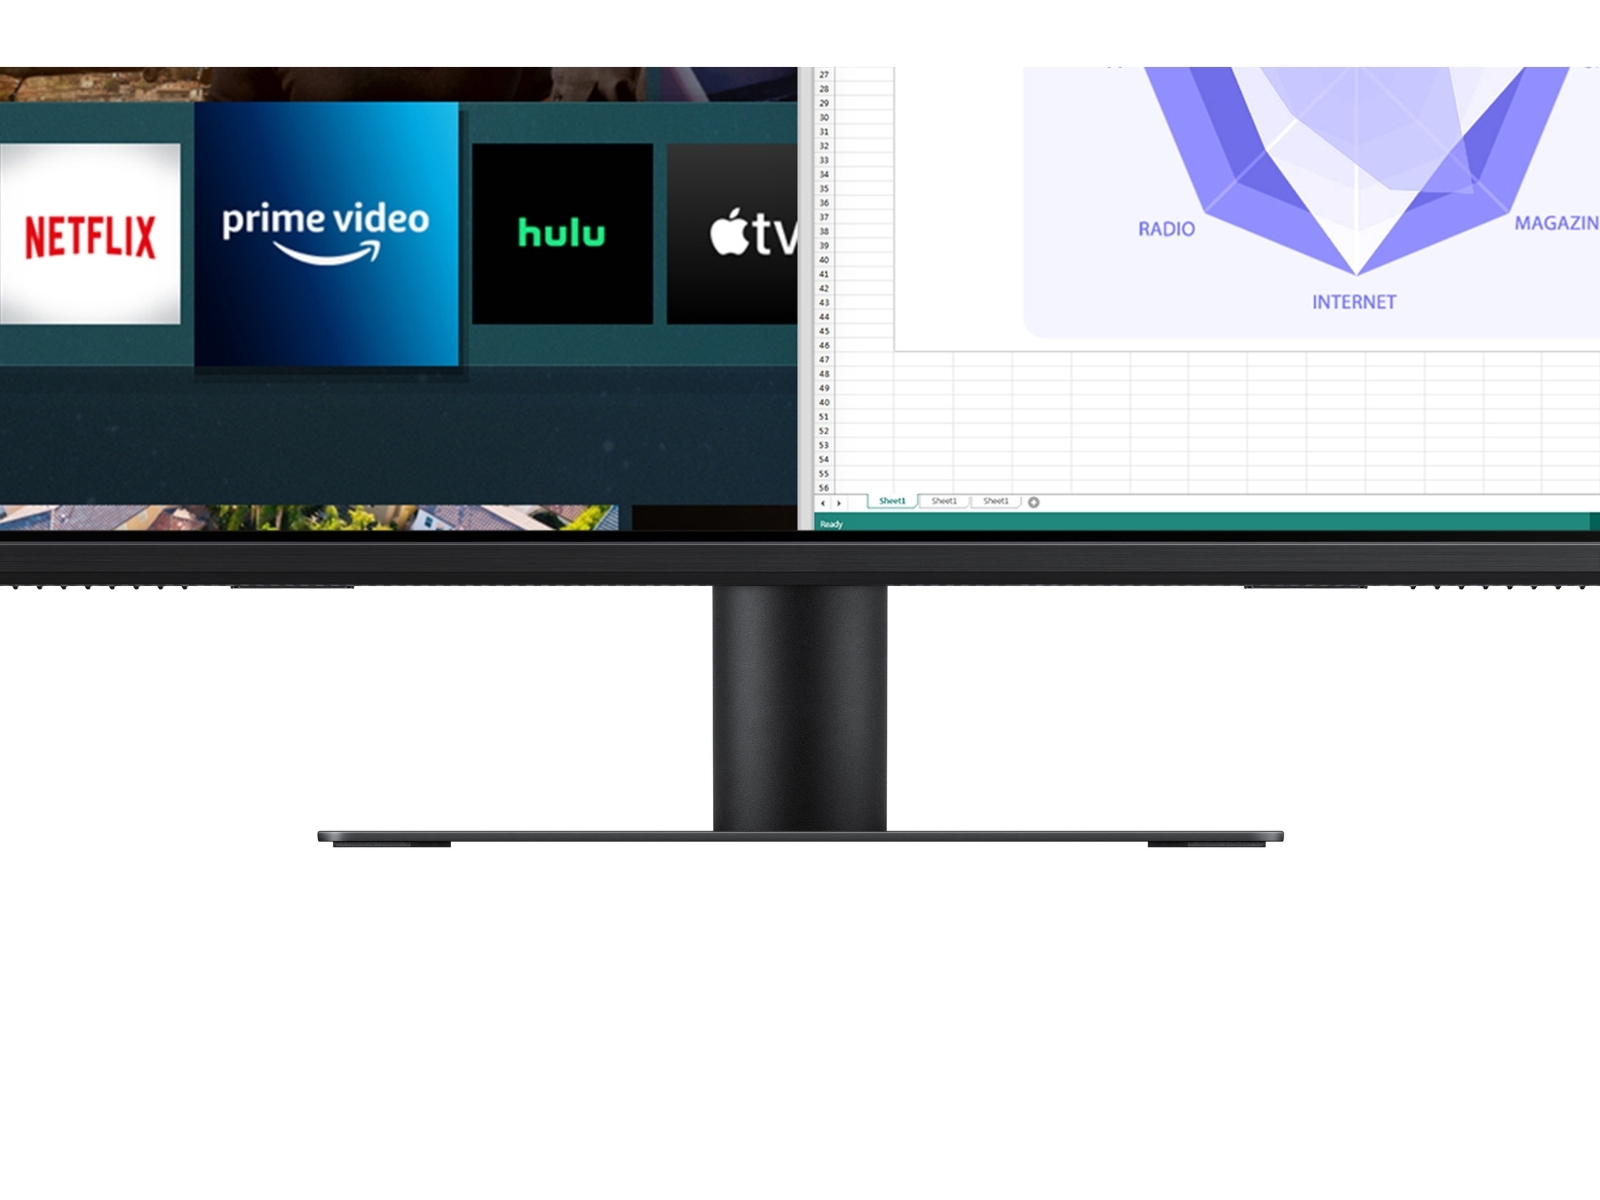 SAMSUNG Monitor inteligente M7 de 32 pulgadas y transmisión de TV, 4K UHD,  imagen adaptativa, vista de juegos ultraancha, reloj Netflix, HBO, Prime